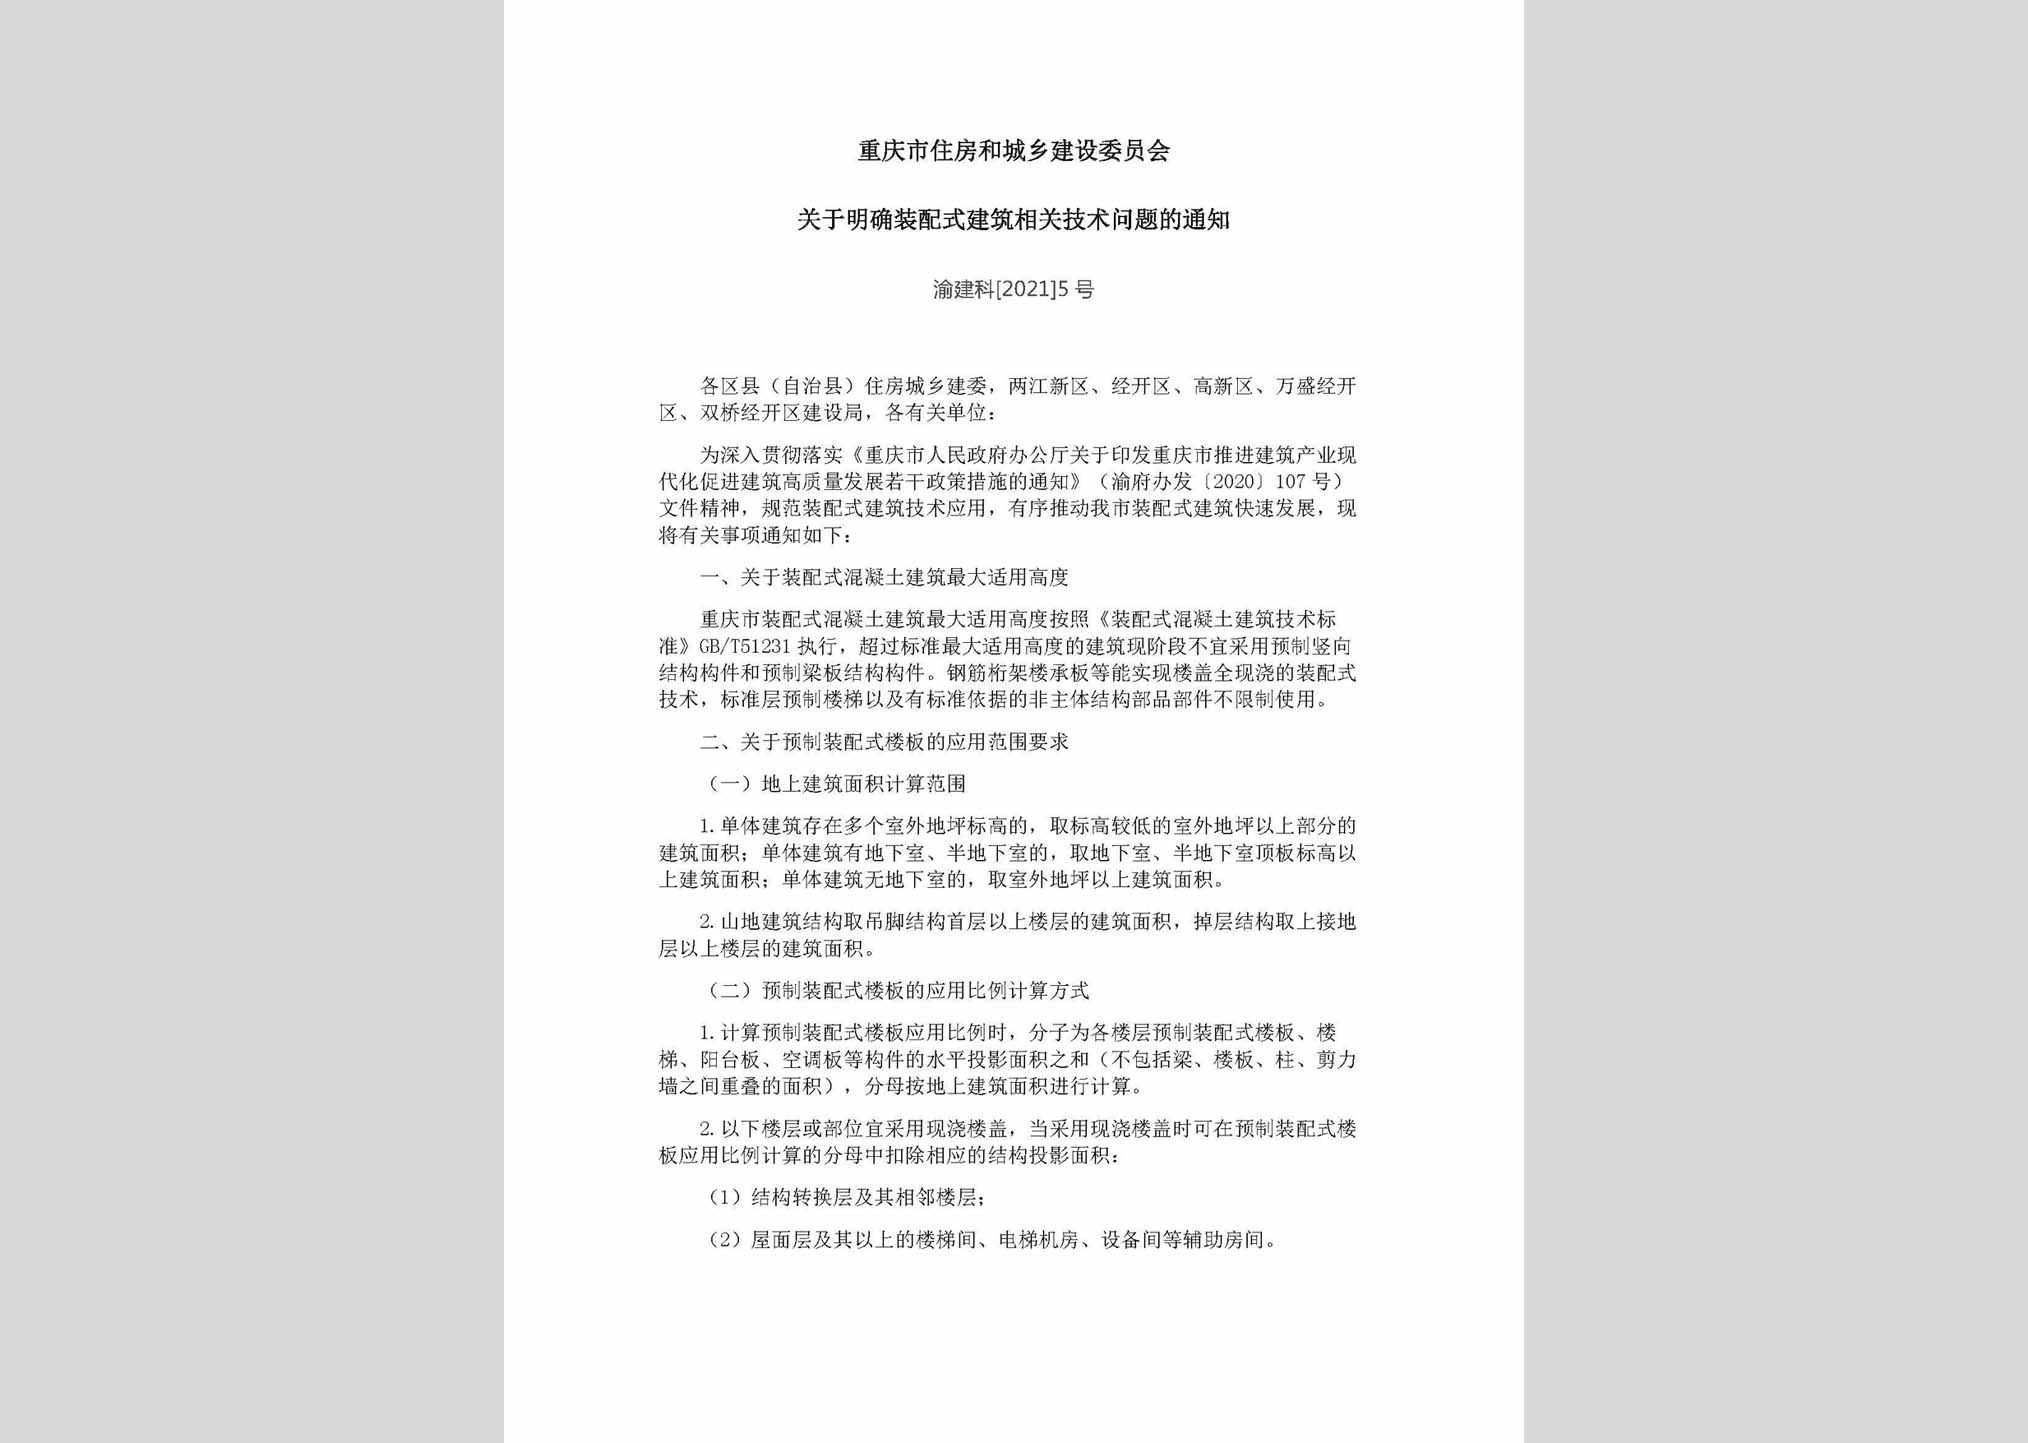 渝建科[2021]5号：重庆市住房和城乡建设委员会关于明确装配式建筑相关技术问题的通知